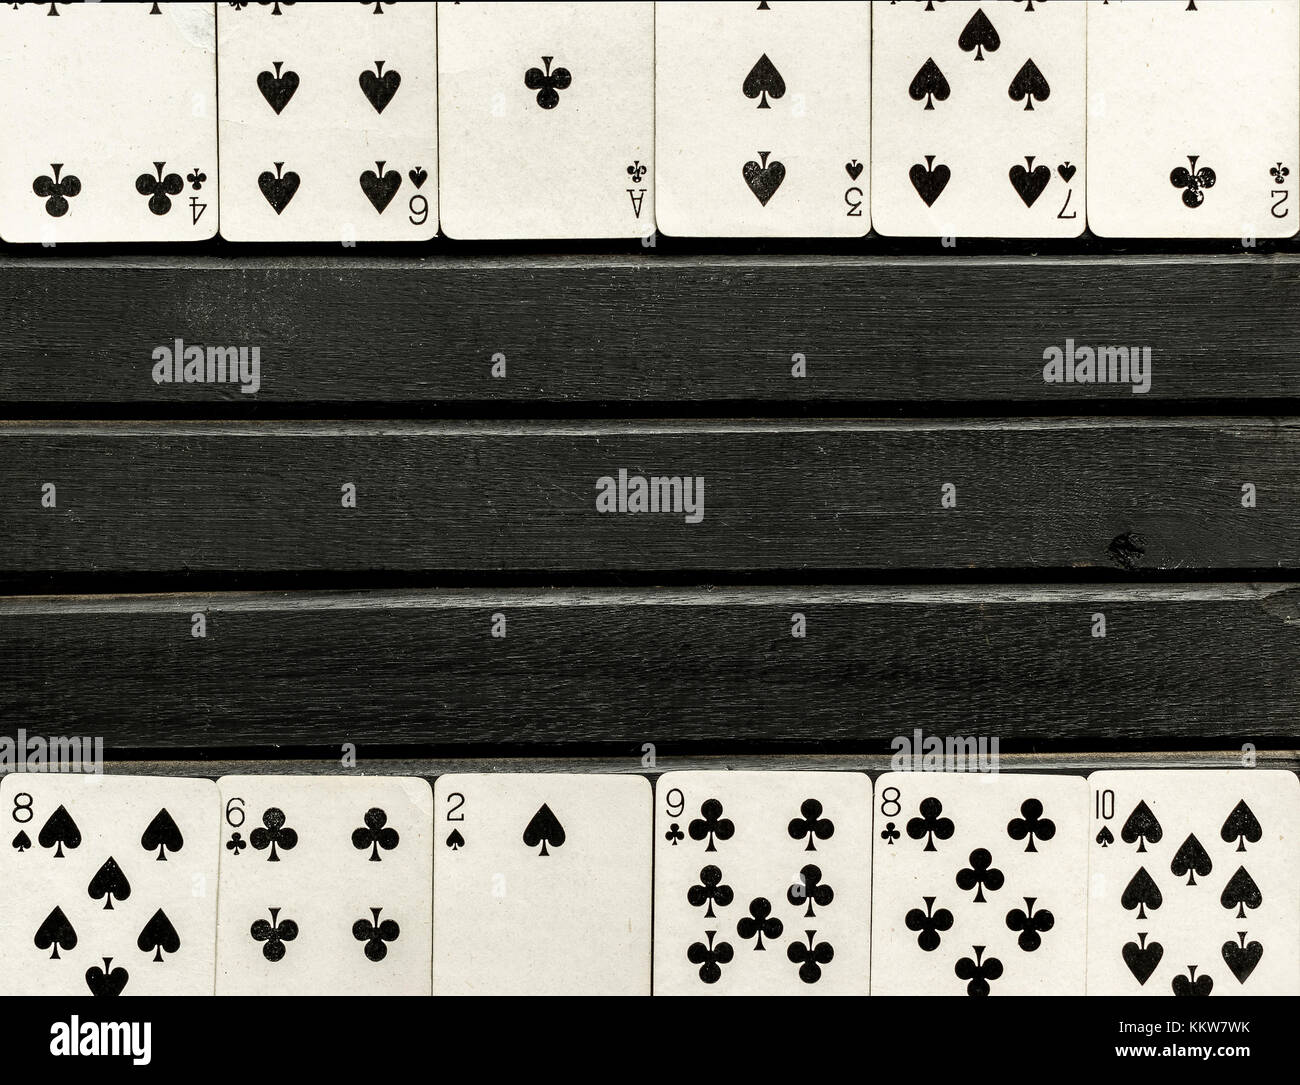 Mazzo di bianco e nero giocando a carte a faccia scoperta, nero su sfondo di legno, carte allineate sul bordo della cornice Foto Stock